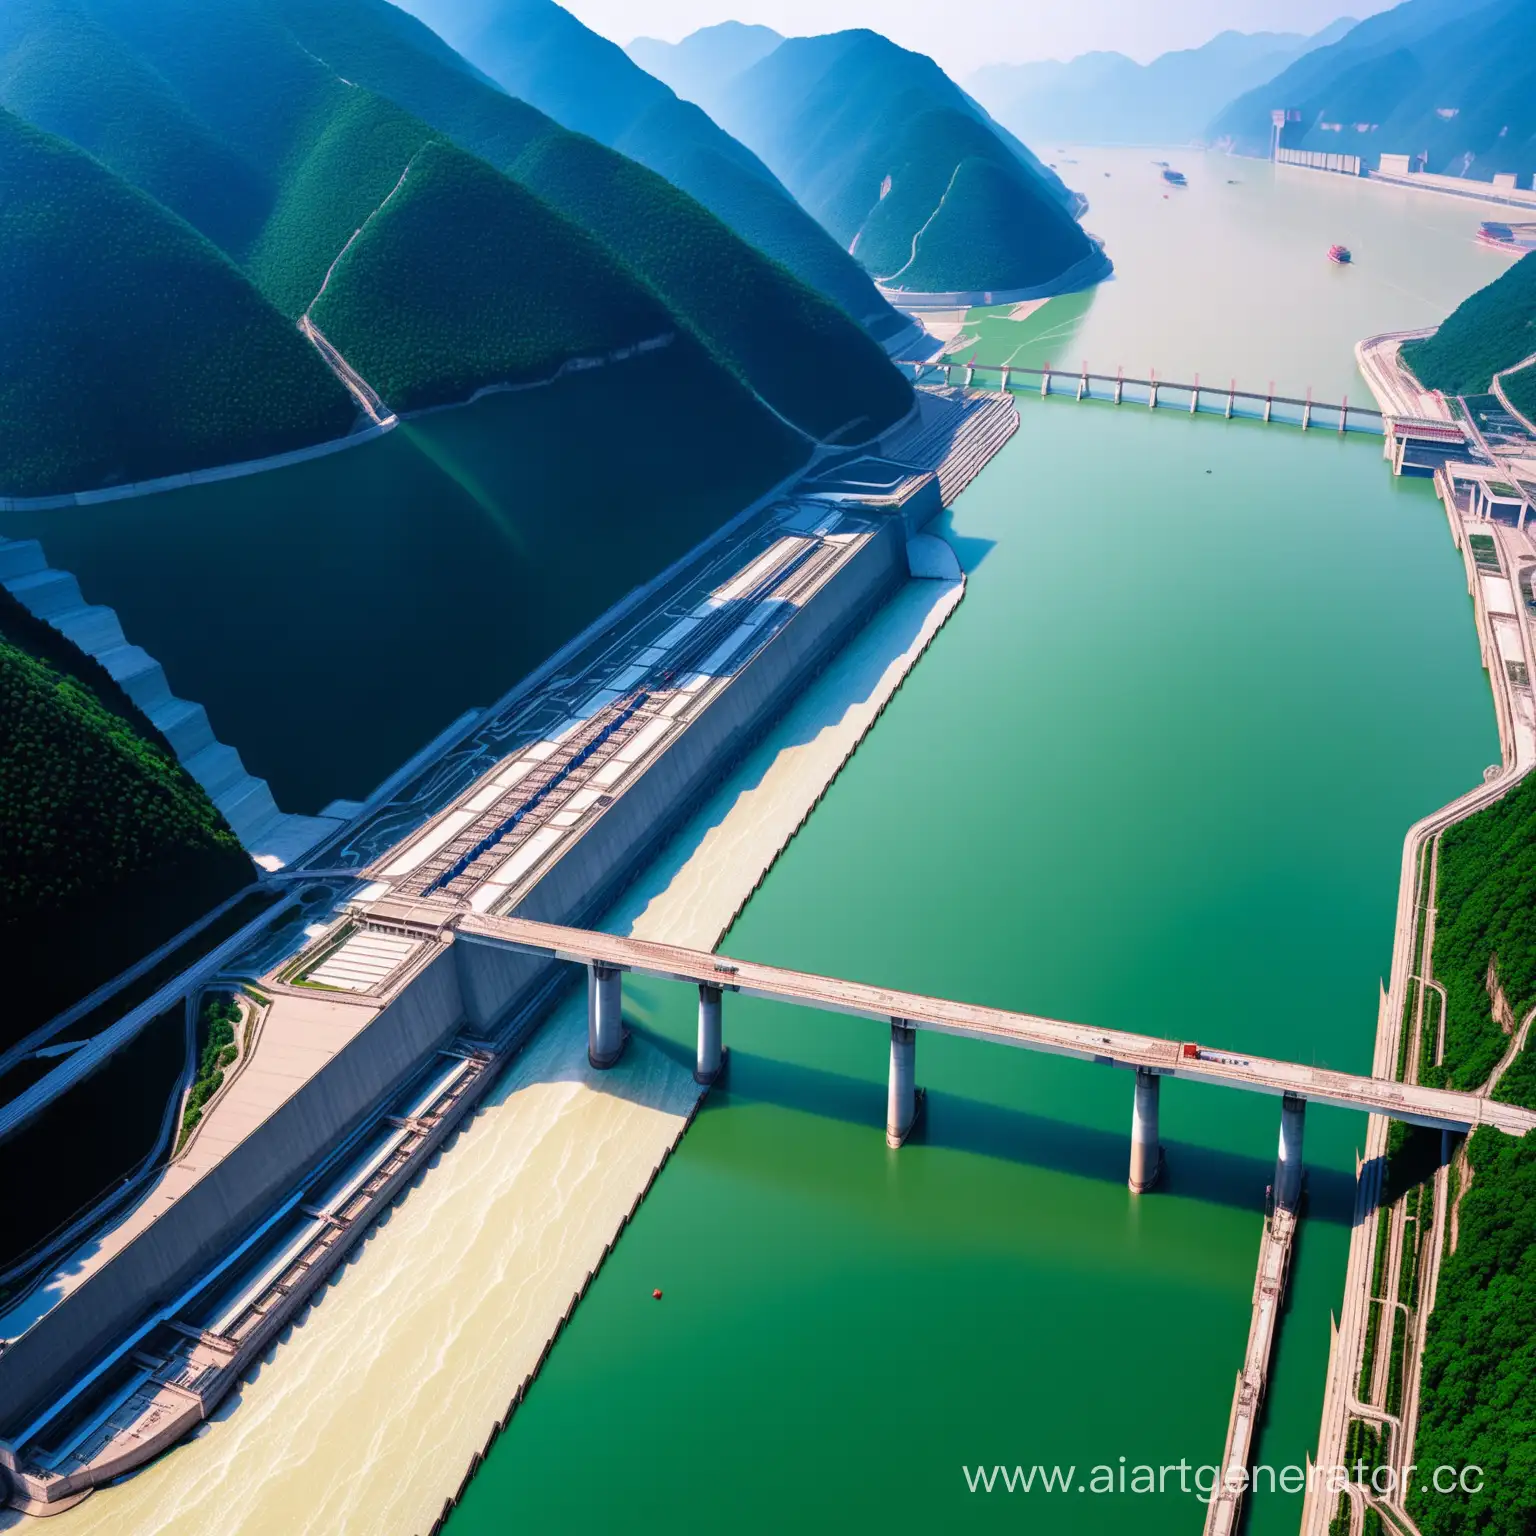 China’s Three Gorges Dam